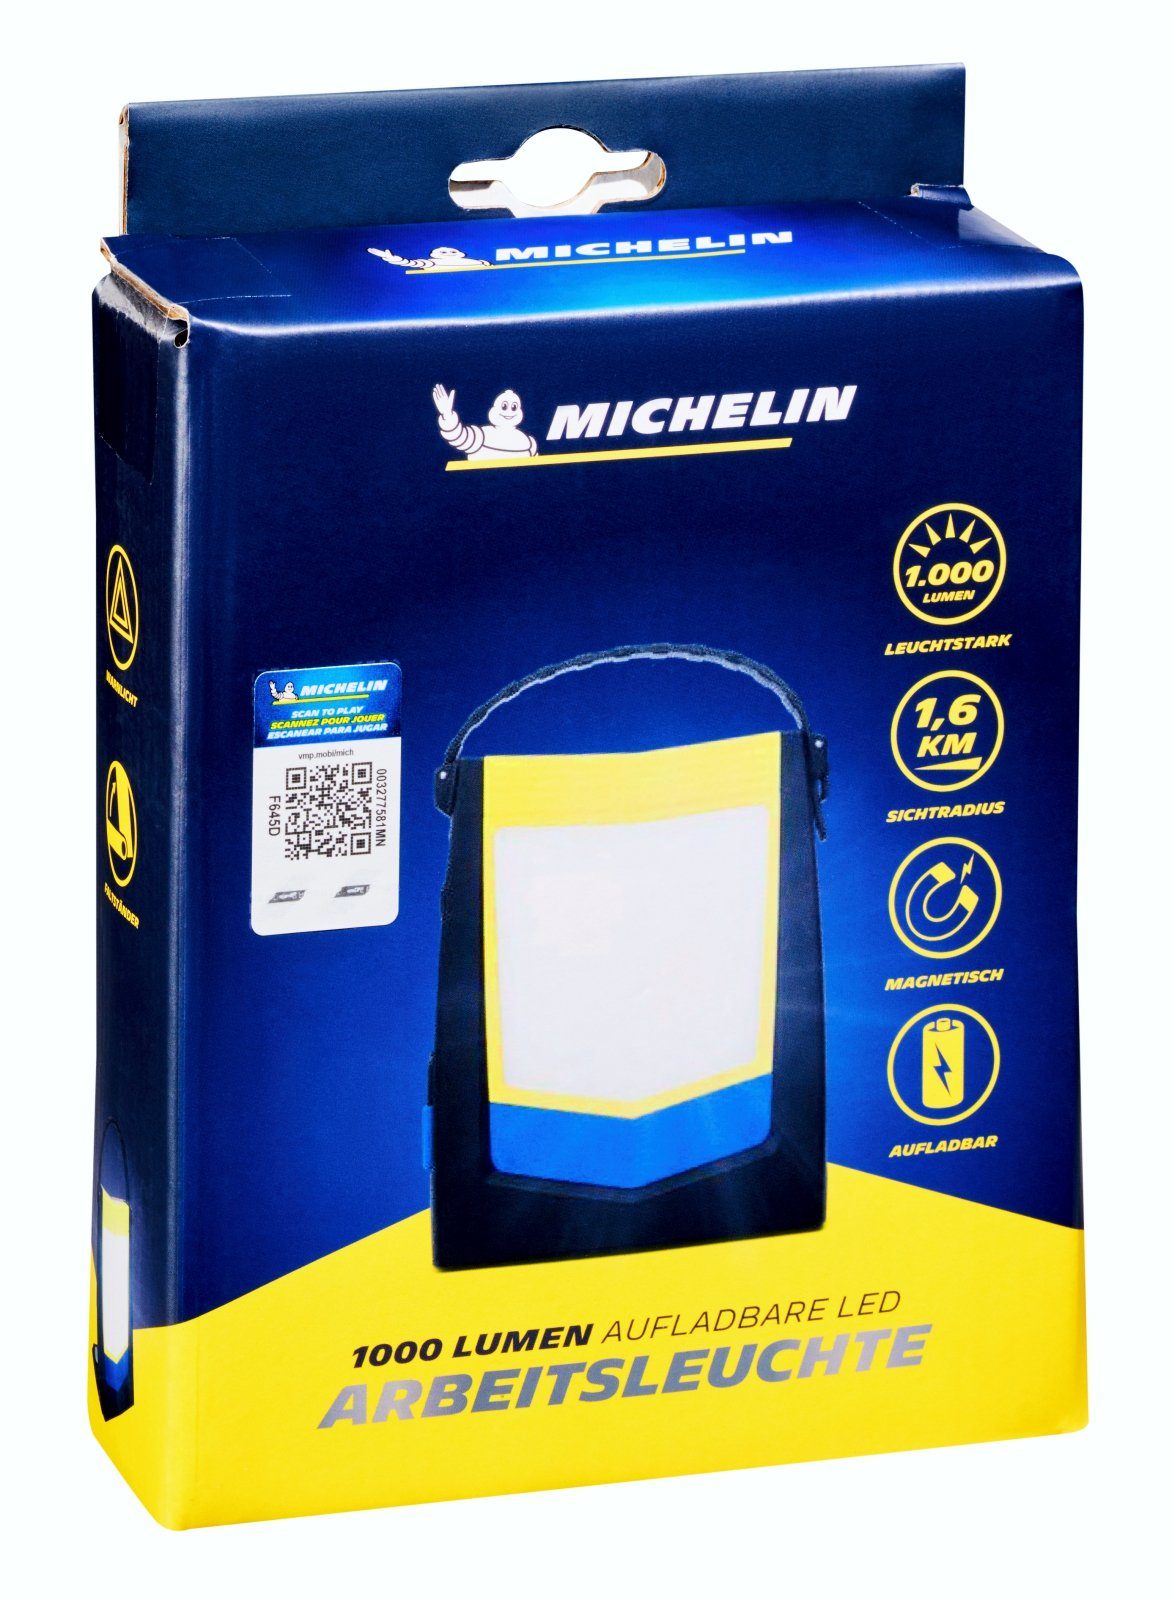 Michelin LED Arbeitsleuchte USB Akku Camping fest LED Lampe 1000 integriert Lumen Strahler Arbeits Leuchte